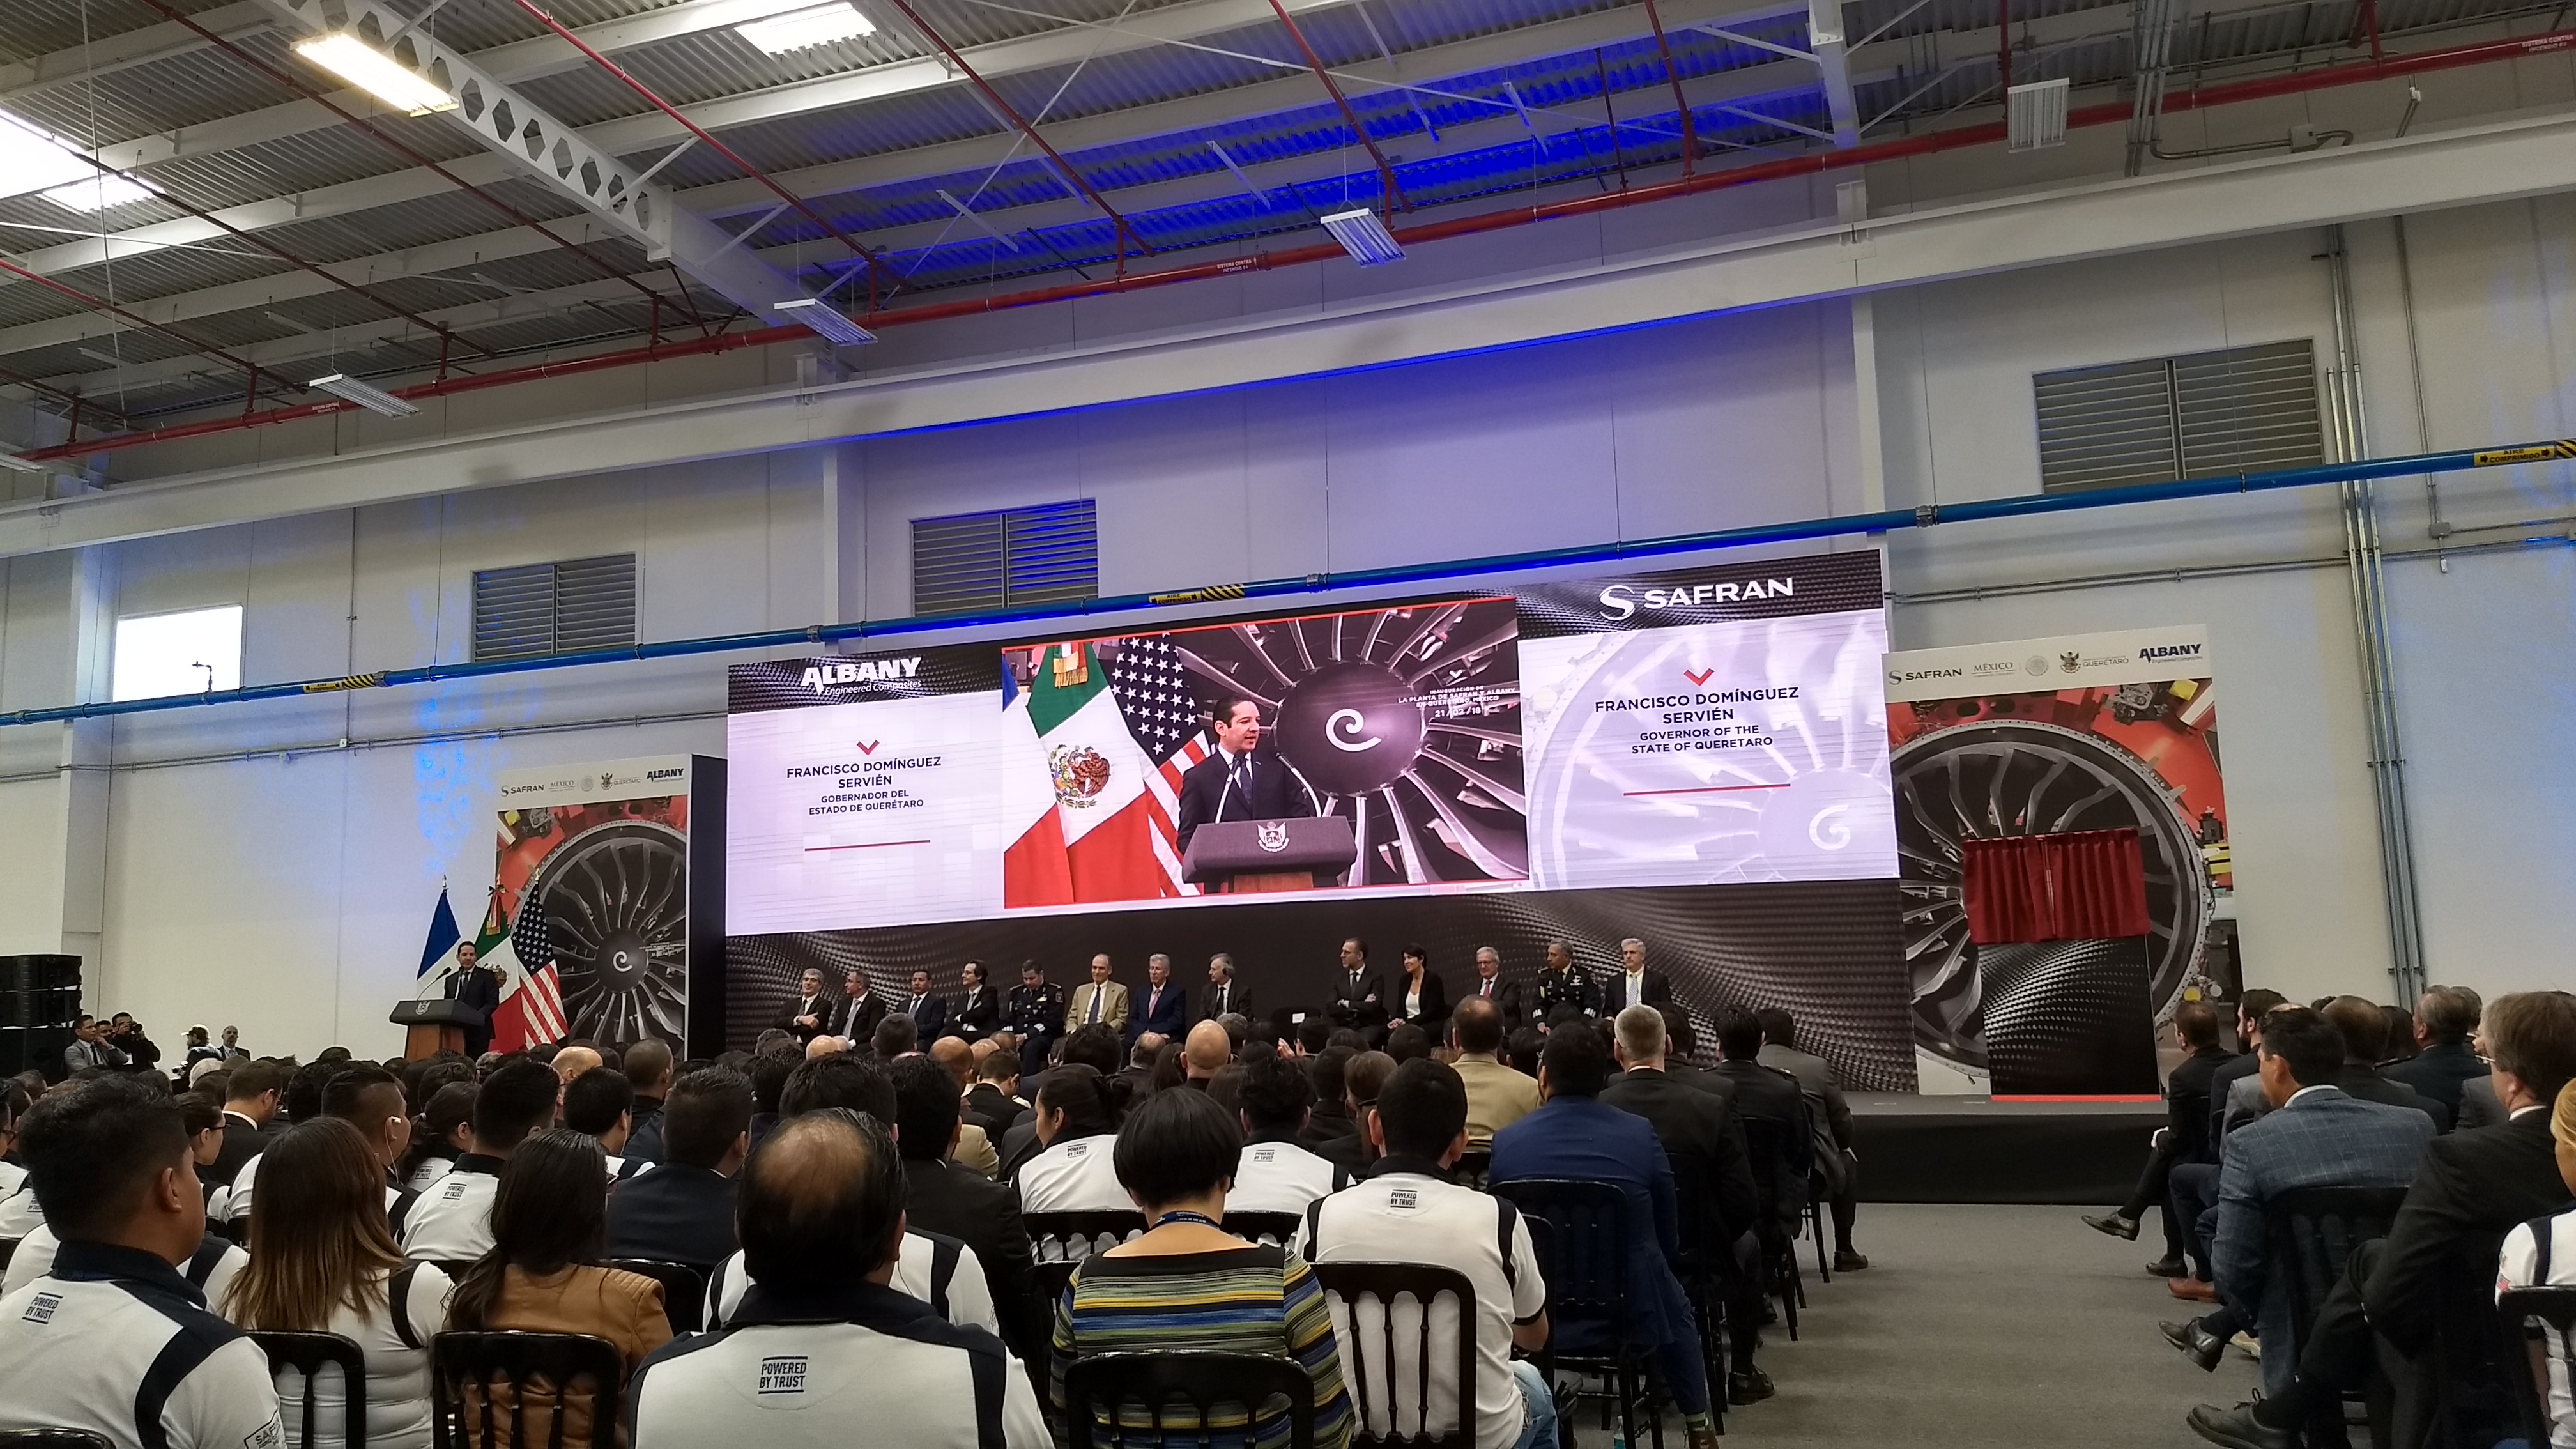  Con inversión de 25 mdp, gobierno de Querétaro anuncia séptima planta de Safran en el estado